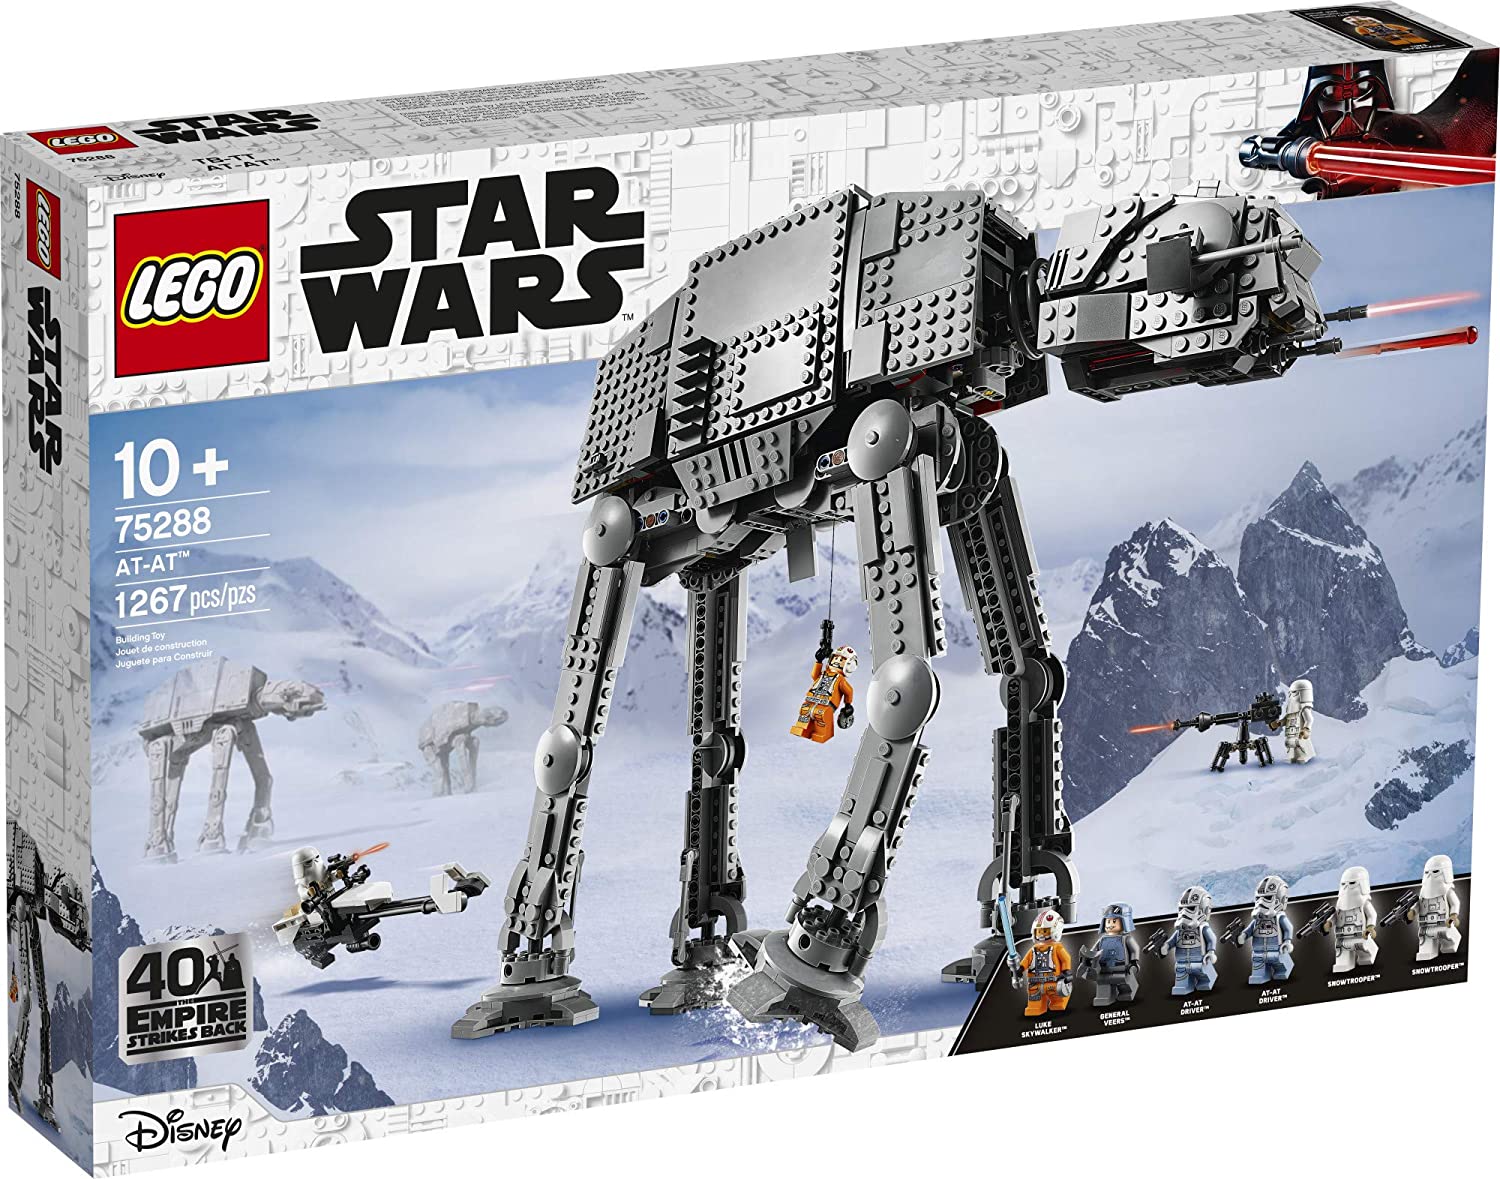 LEGO Star Wars at-at 75288 Kit de construcción,  Star Wars (1,267 piezas)